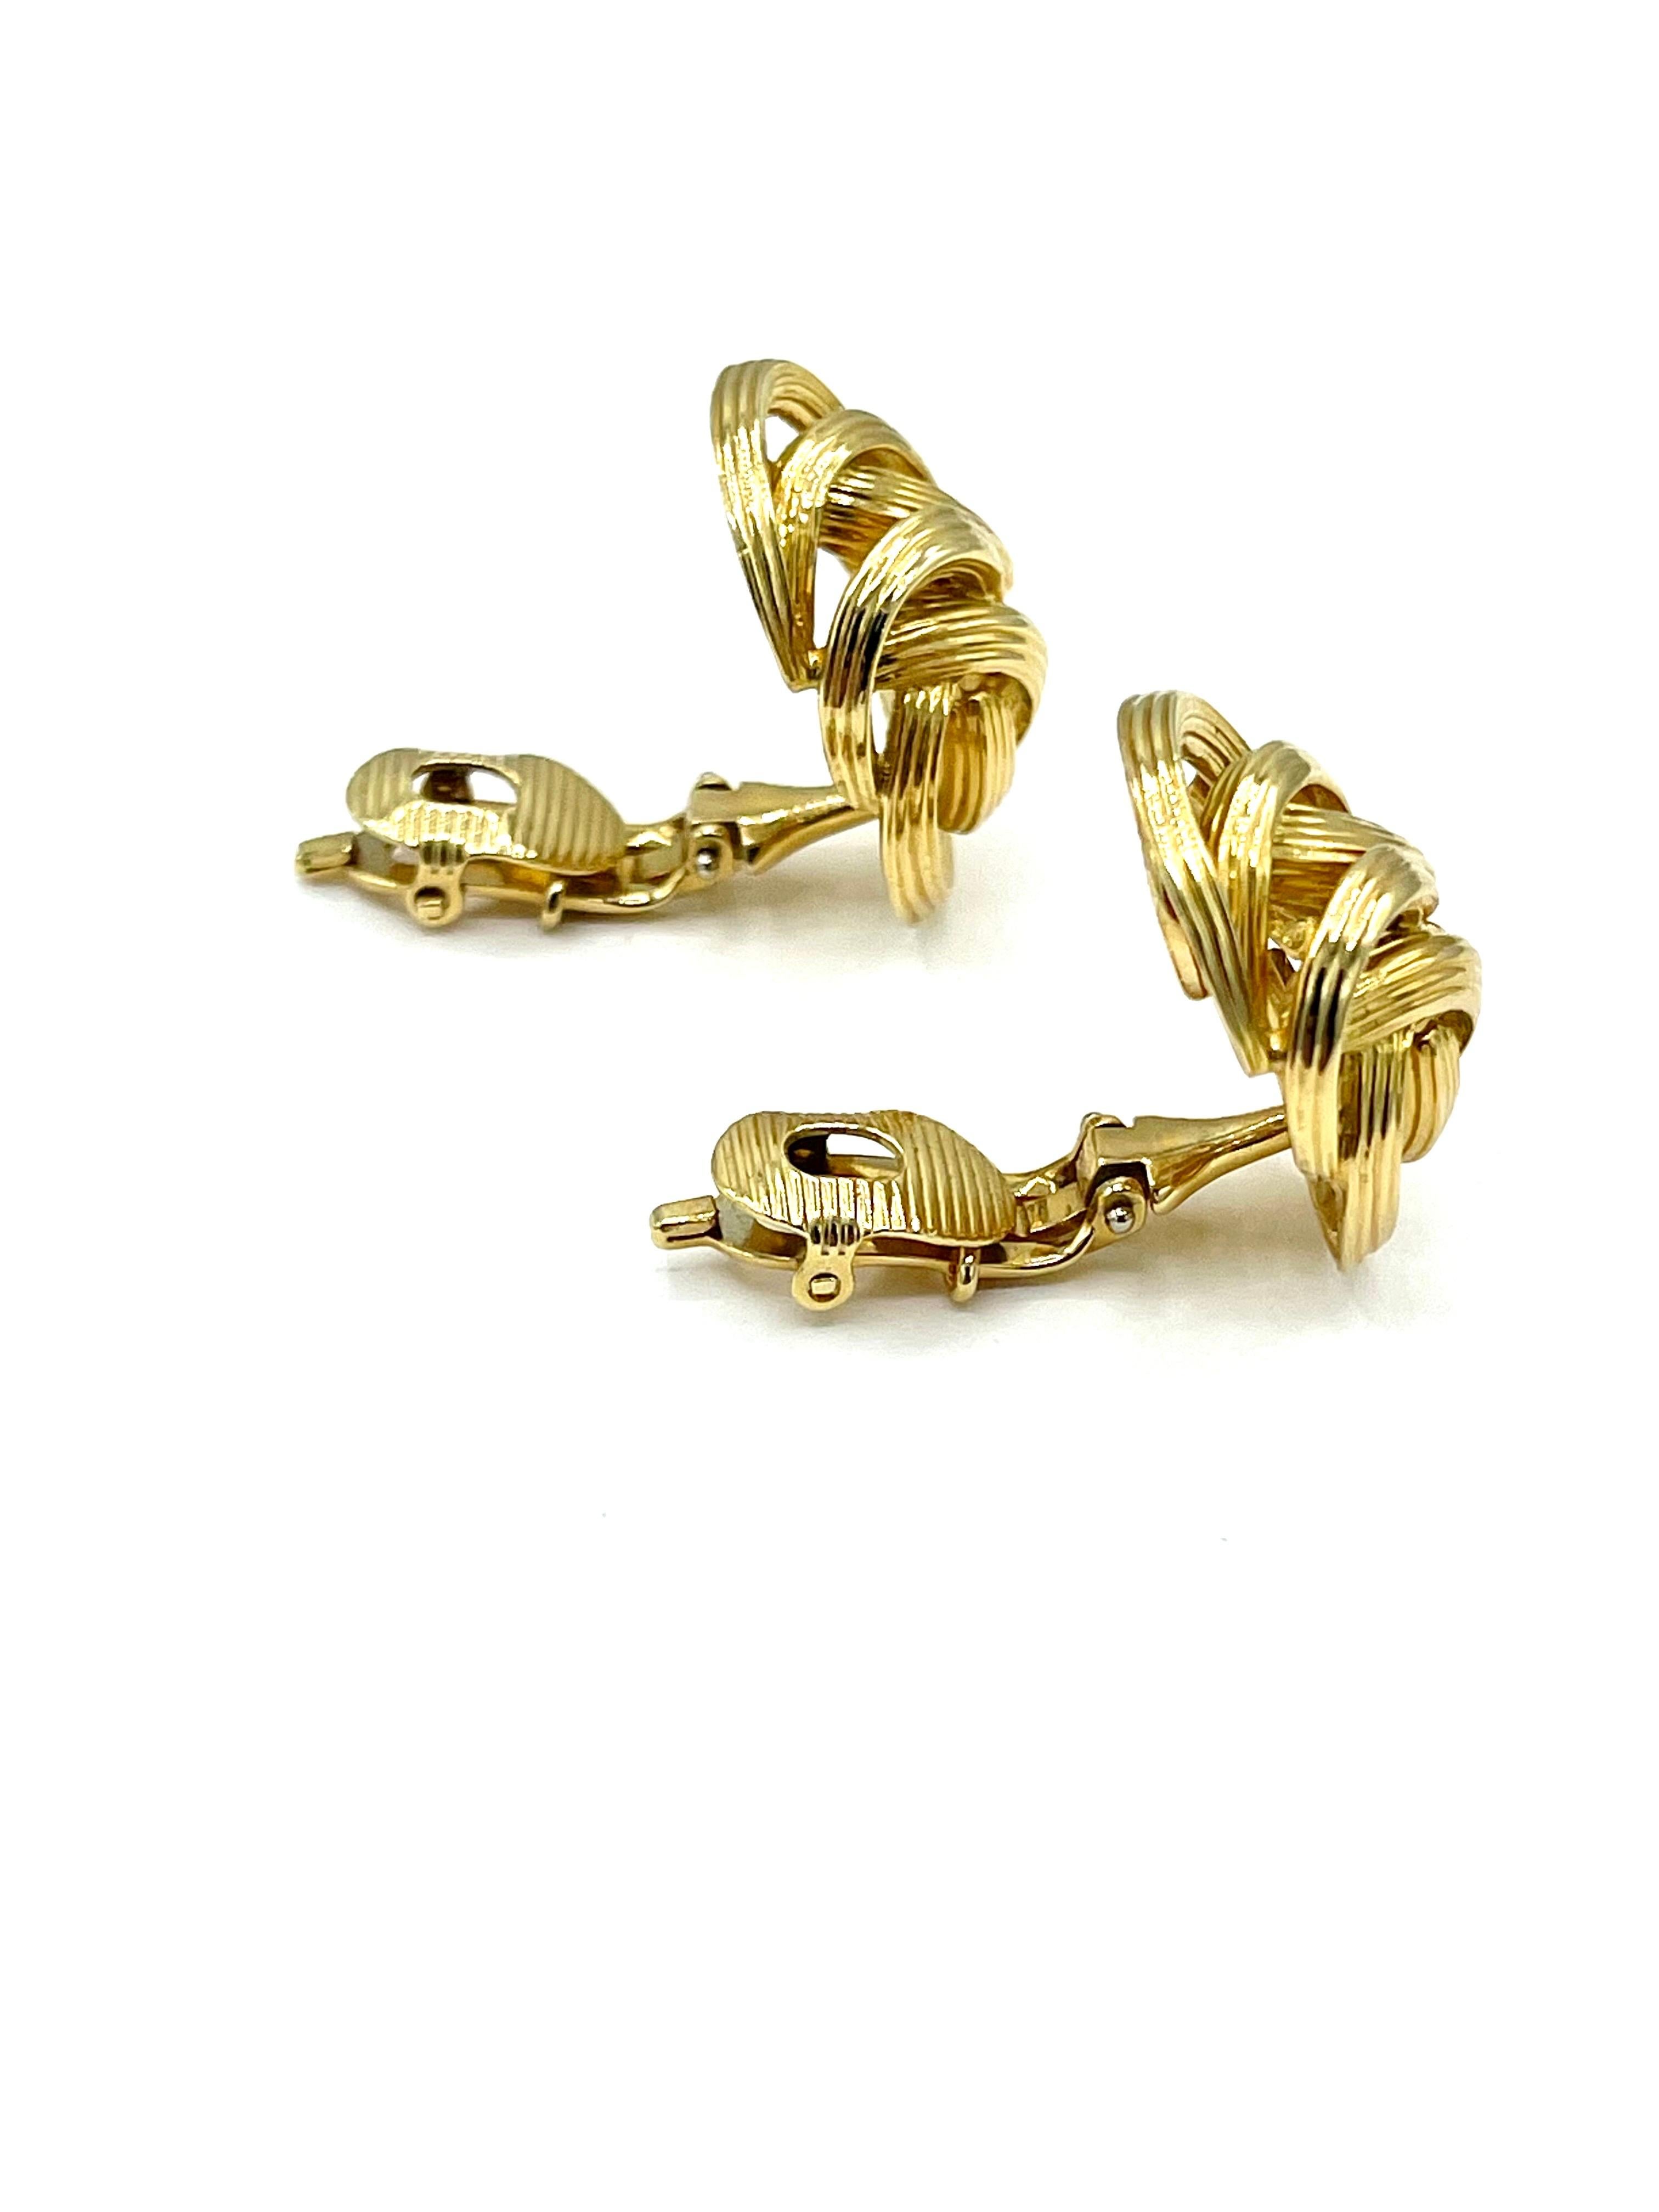 Ein tolles Paar Ohrringe von Tiffany & Co  Diese ovalen Knotenohrringe aus 18 Karat Gelbgold sind mit strukturiertem Gold und einem Leaver-Back-Clip ausgestattet.  Sie sind mit 